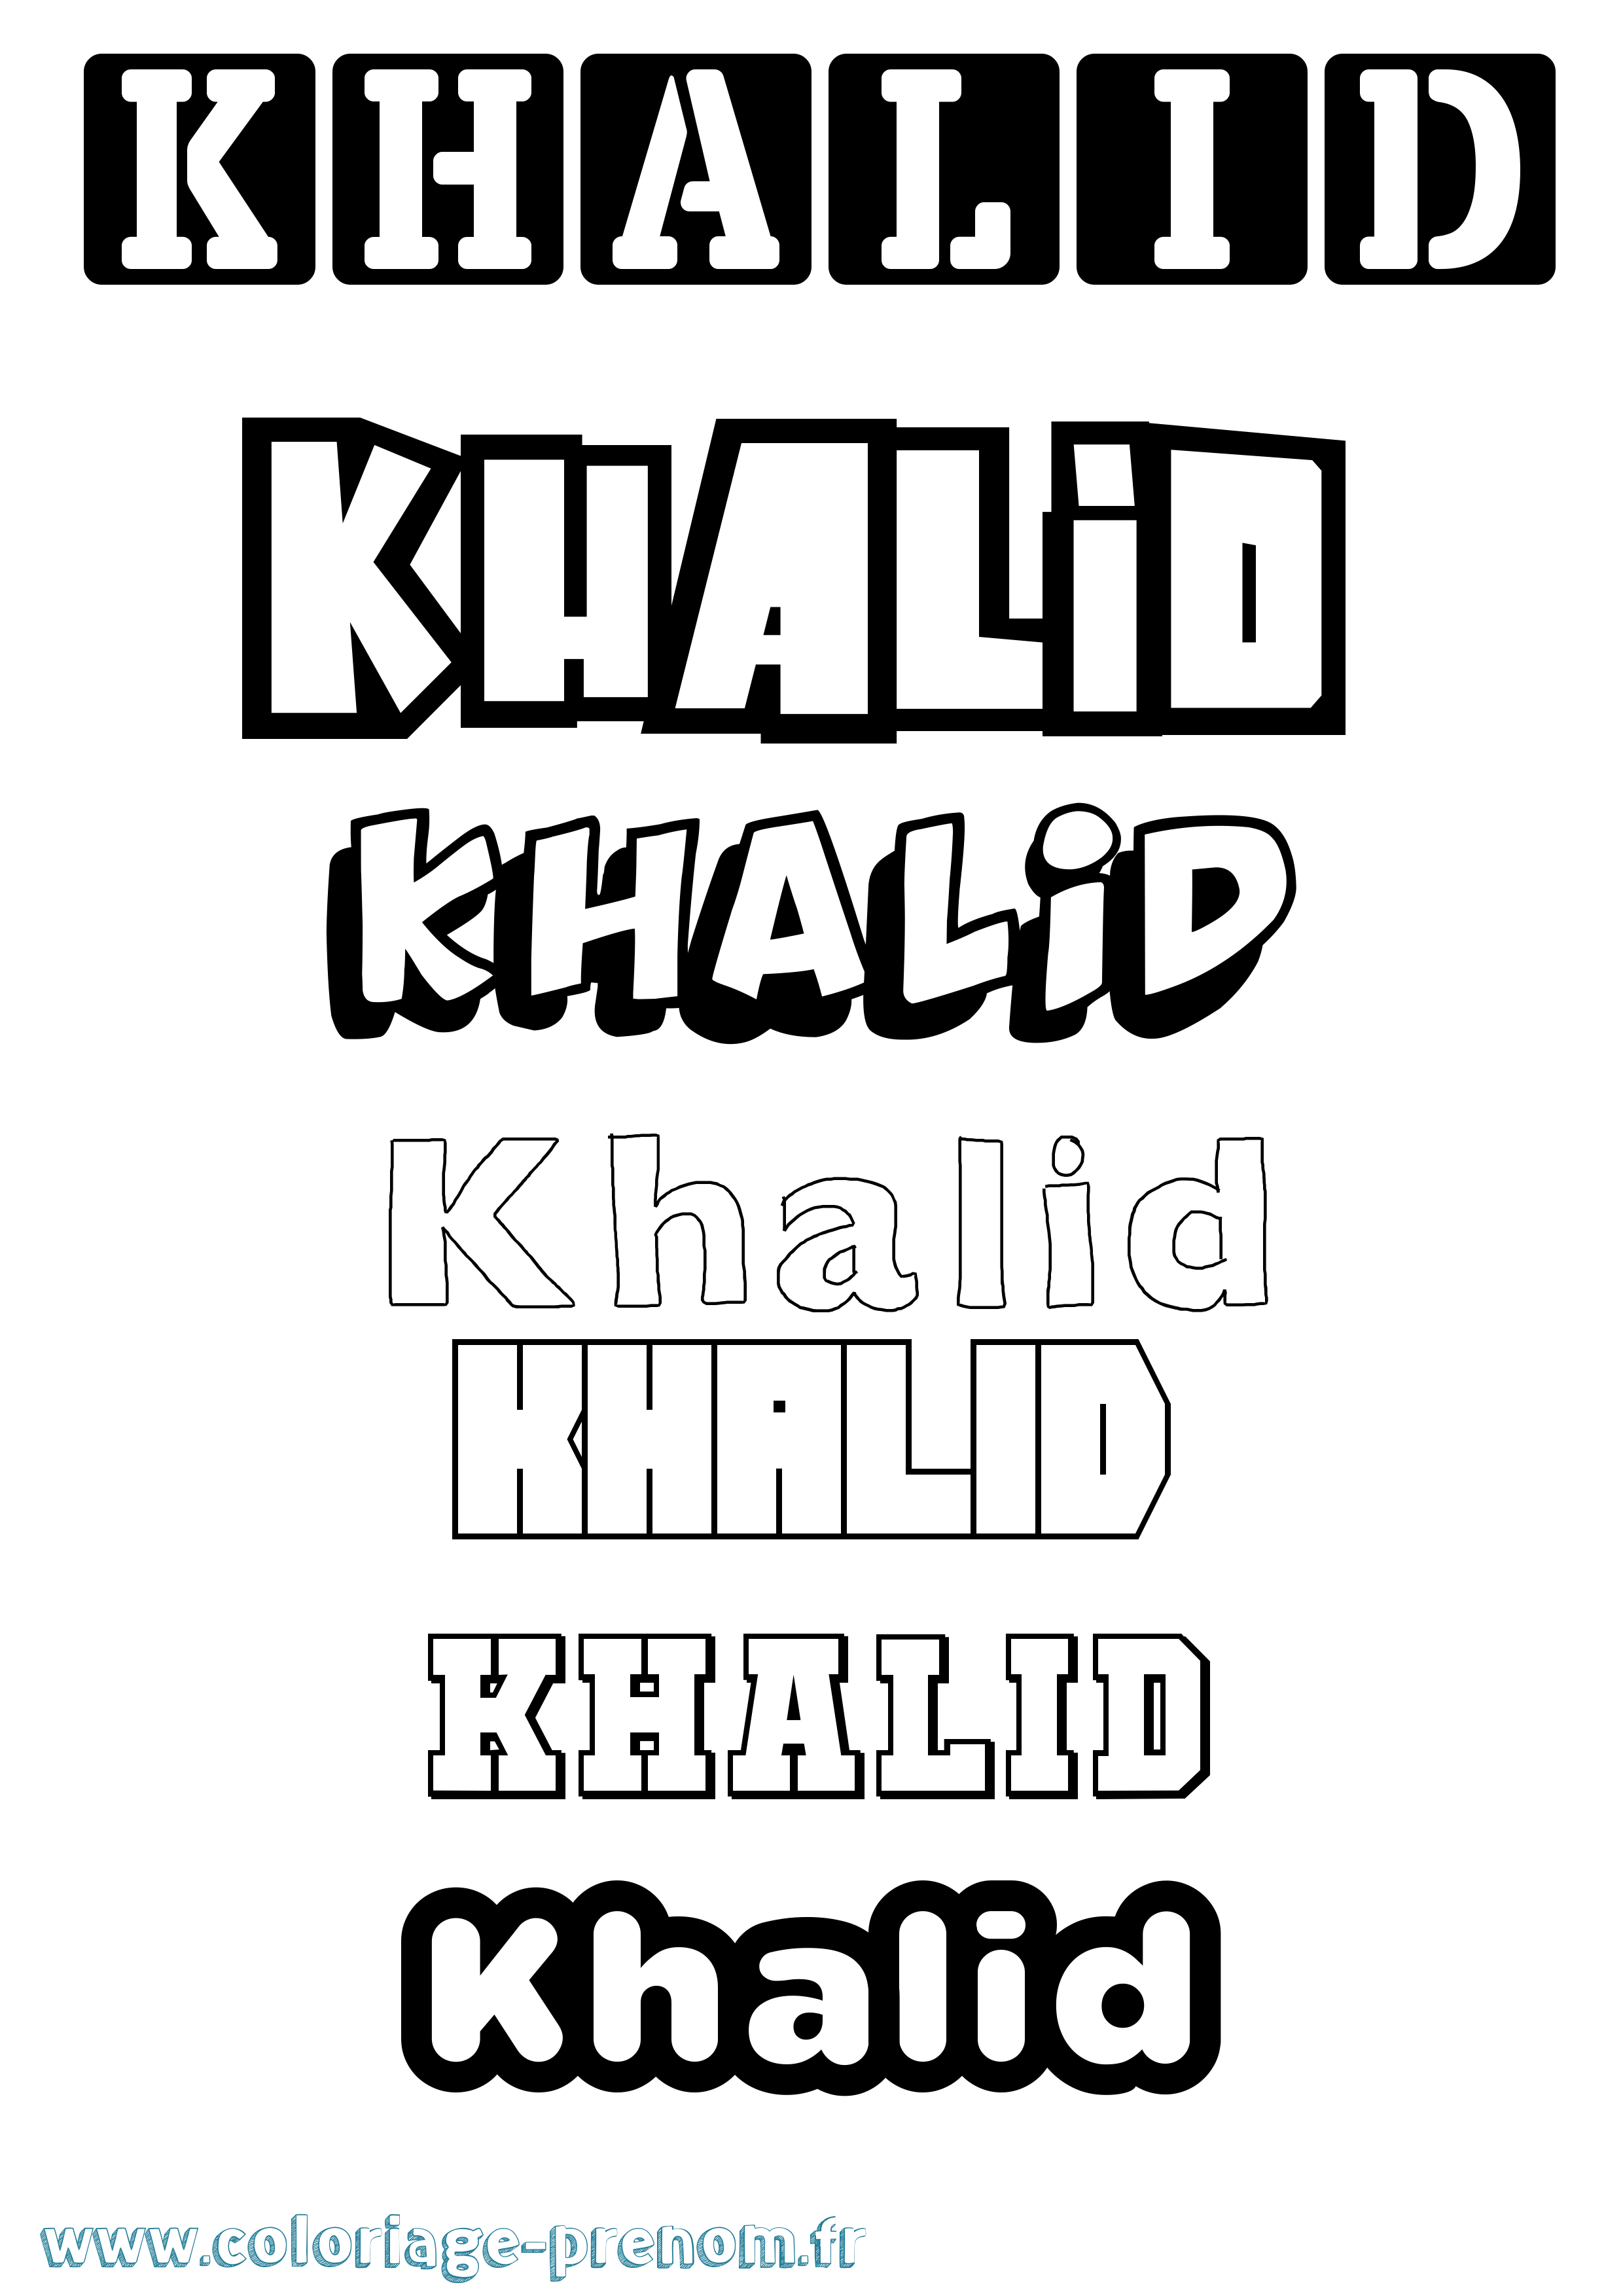 Coloriage prénom Khalid Simple